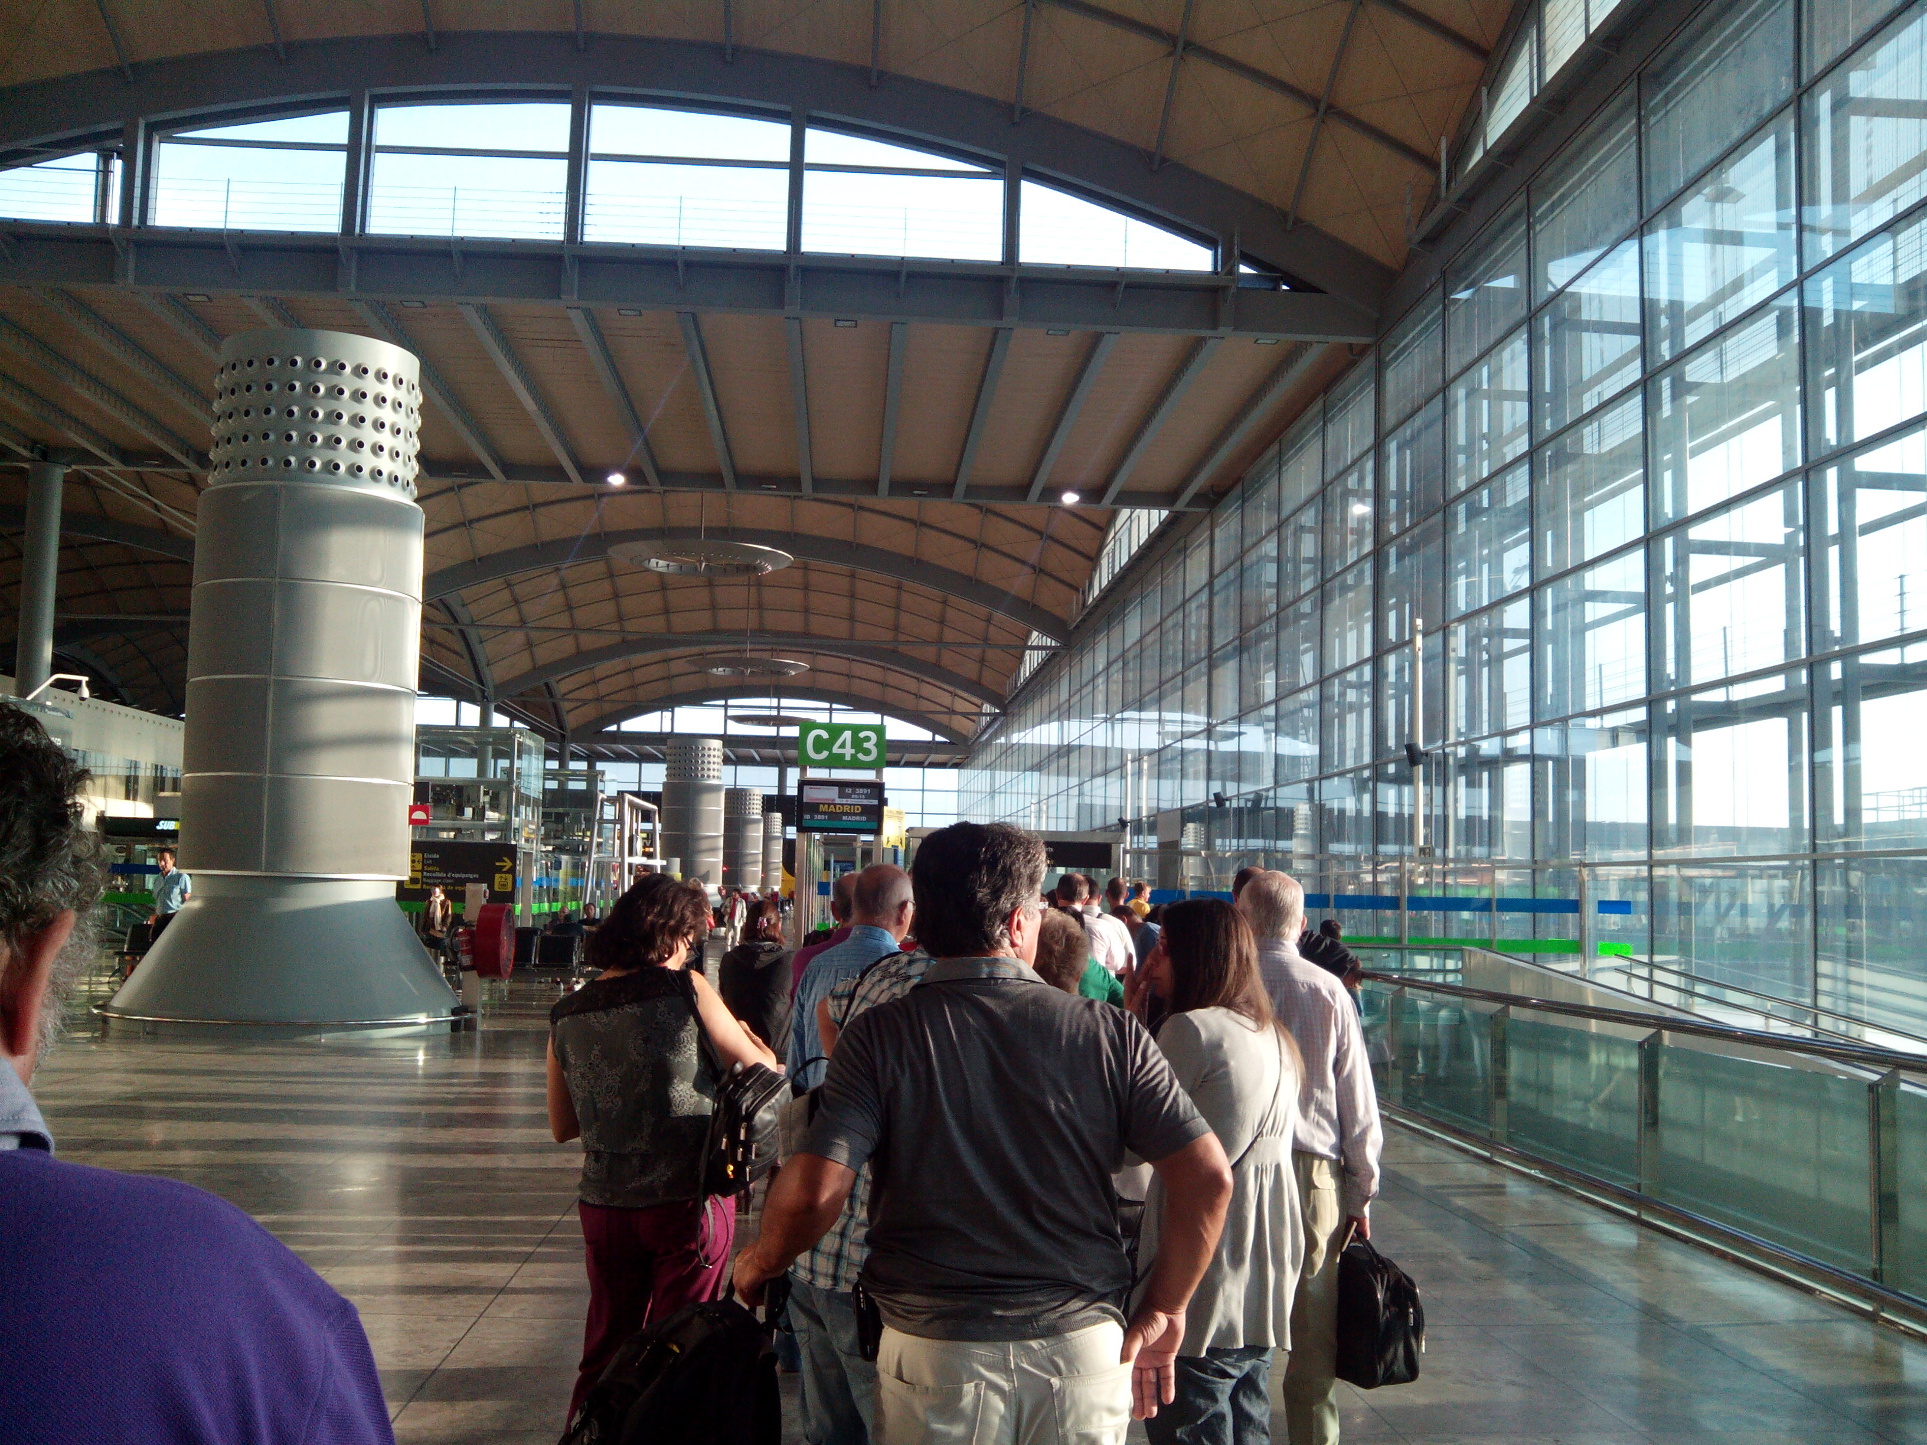 Aeropuerto de Alicante